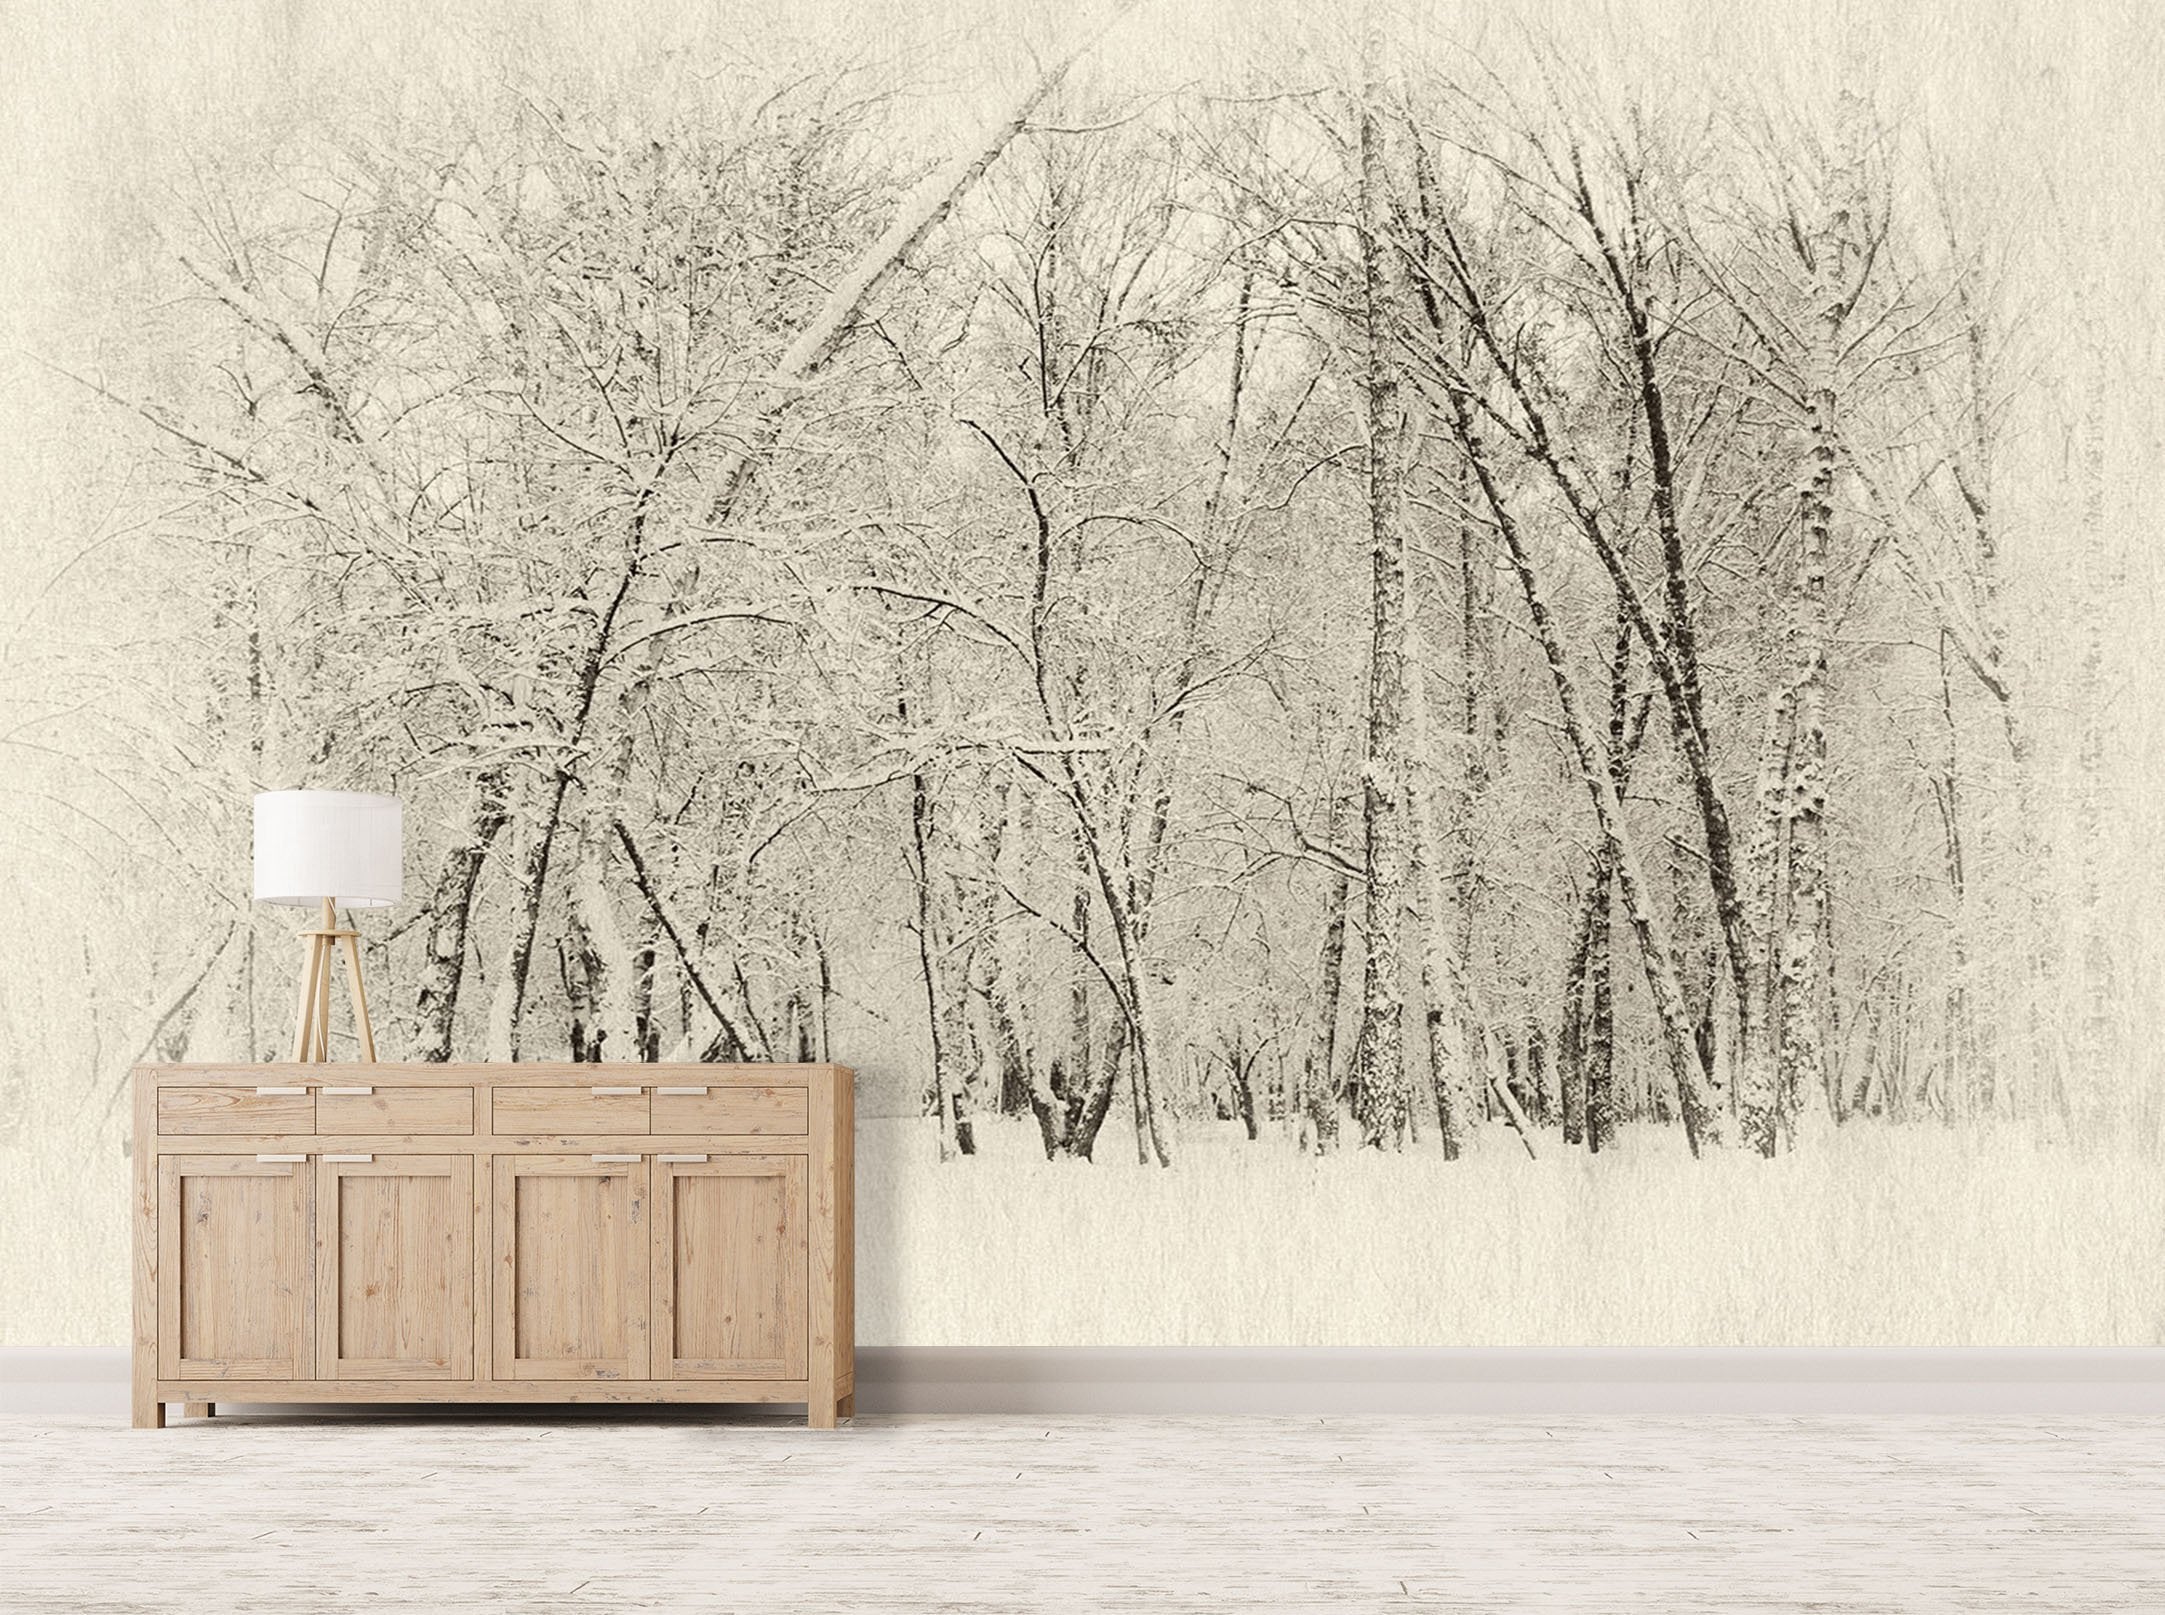 3D Snowy Landscape 592 Wallpaper AJ Wallpaper 2 